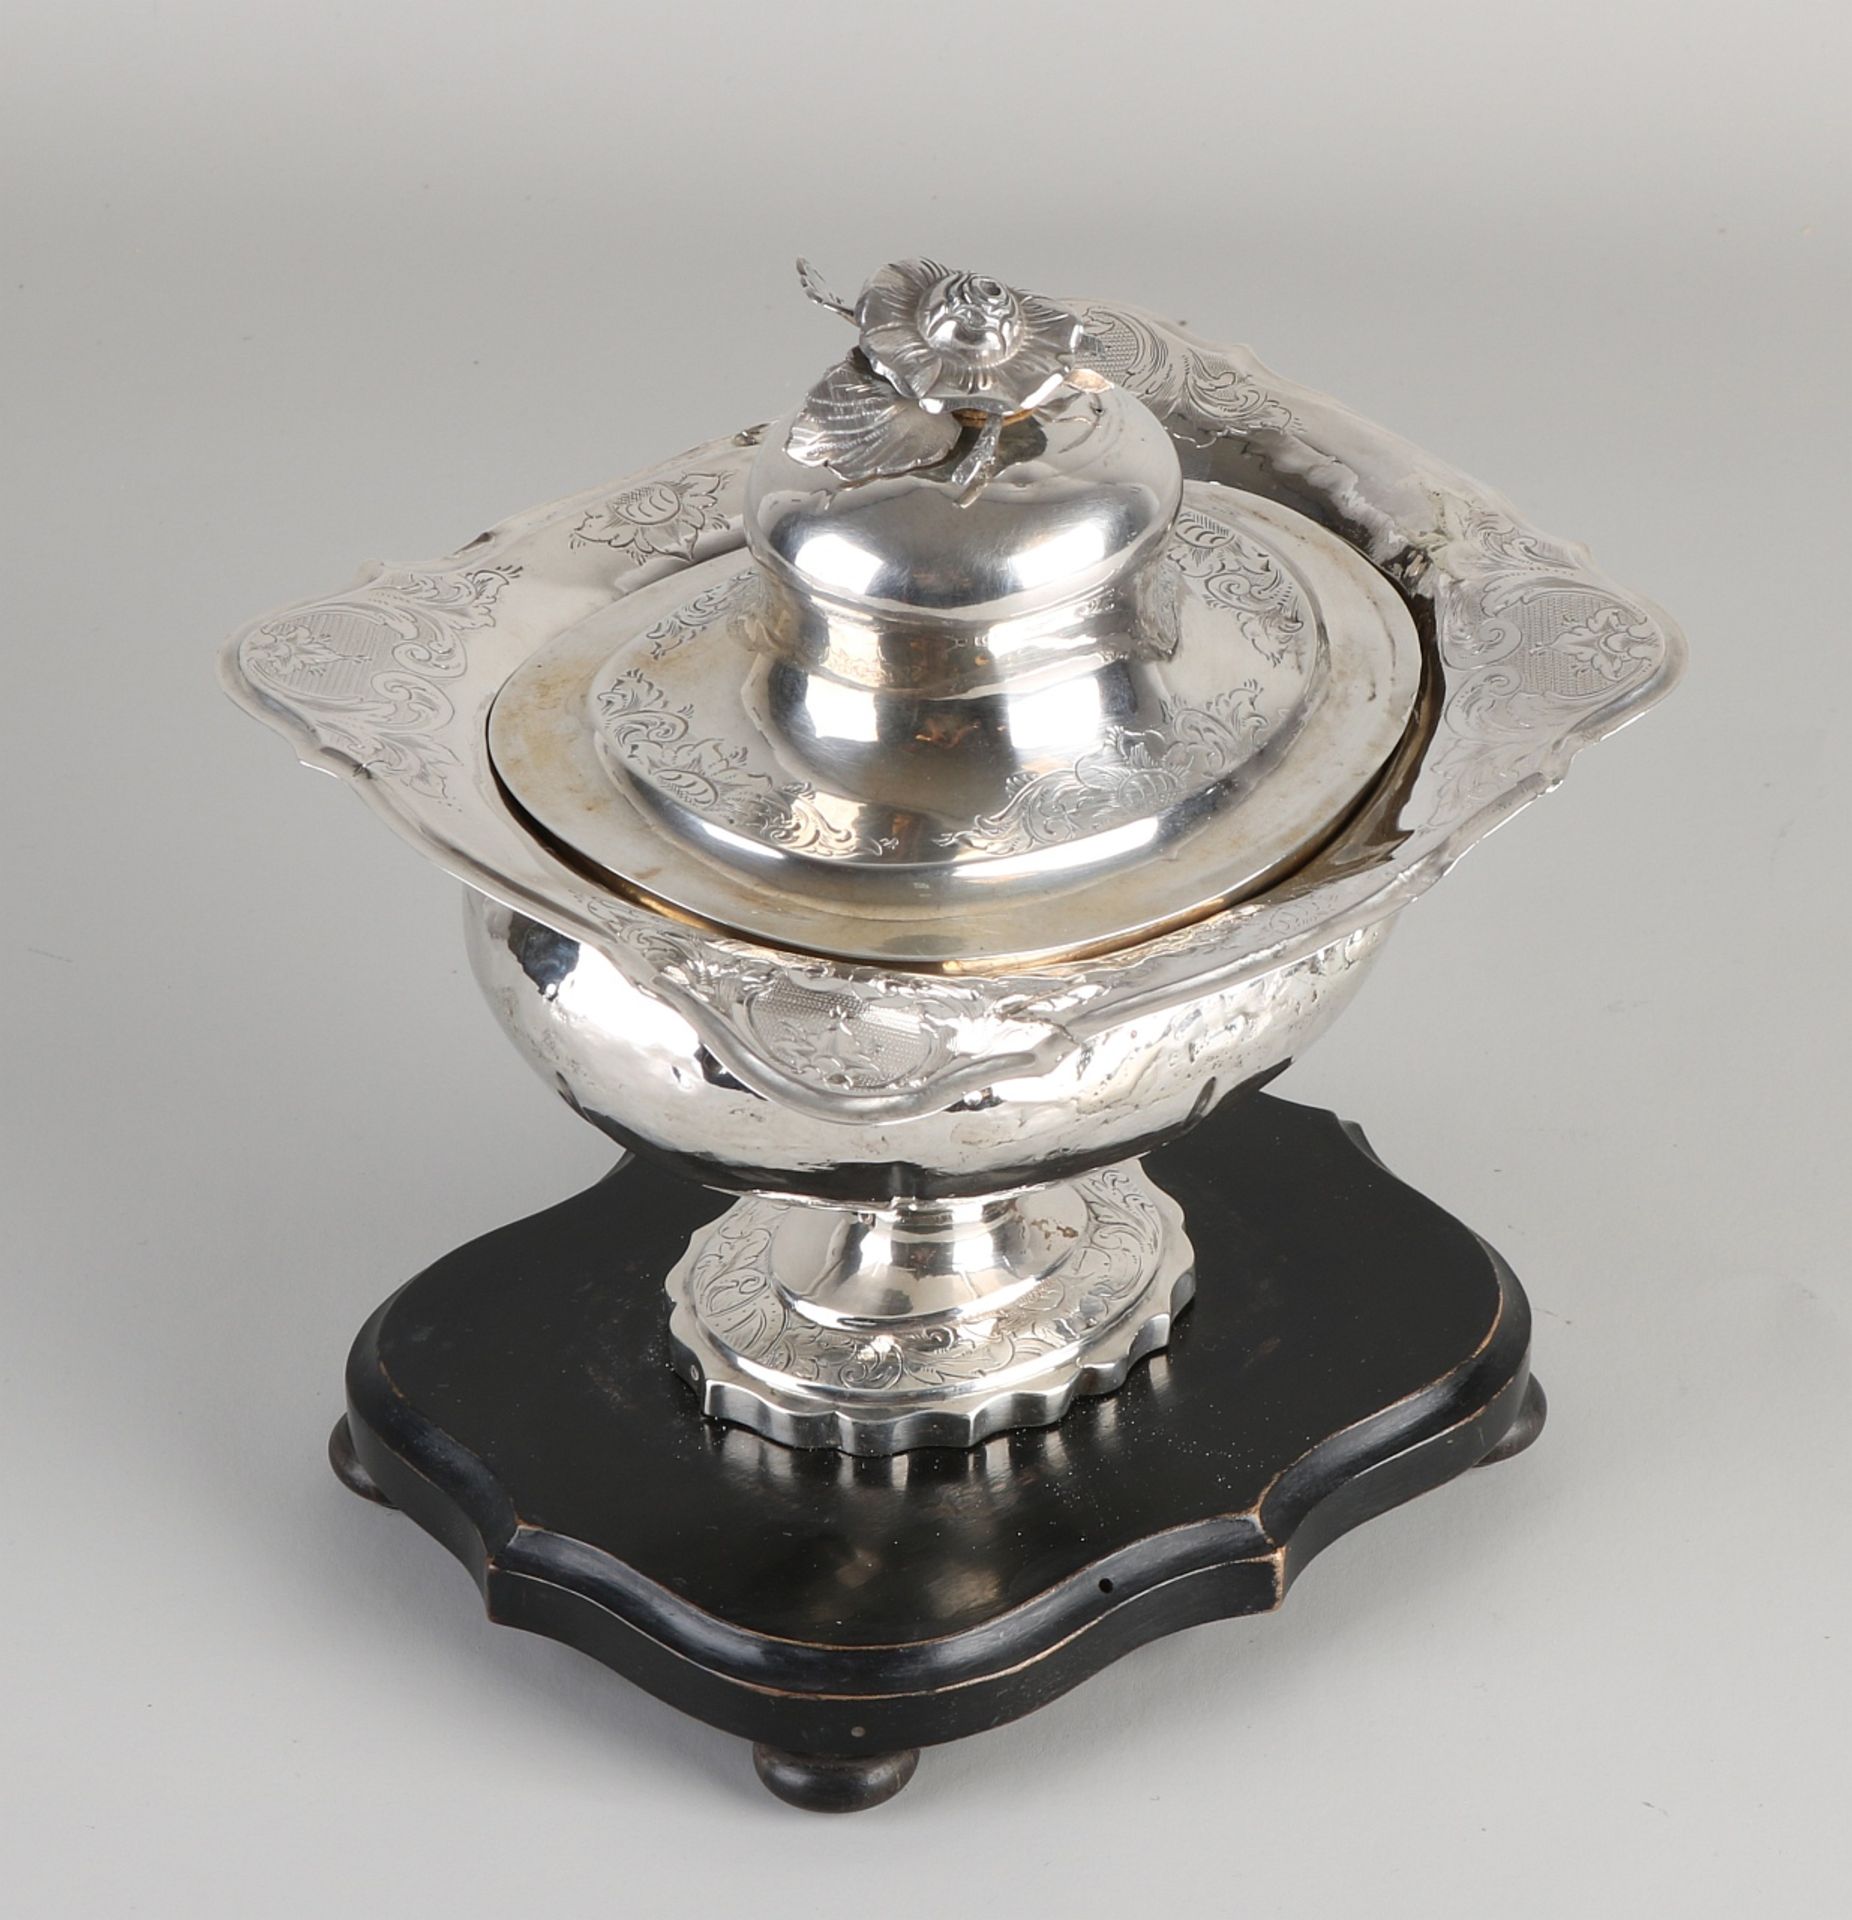 Silbernes Tabakglas, 833/000, umrissenes Modell mit Gravur und einer Blume als Knopf auf dem Deckel - Bild 2 aus 2